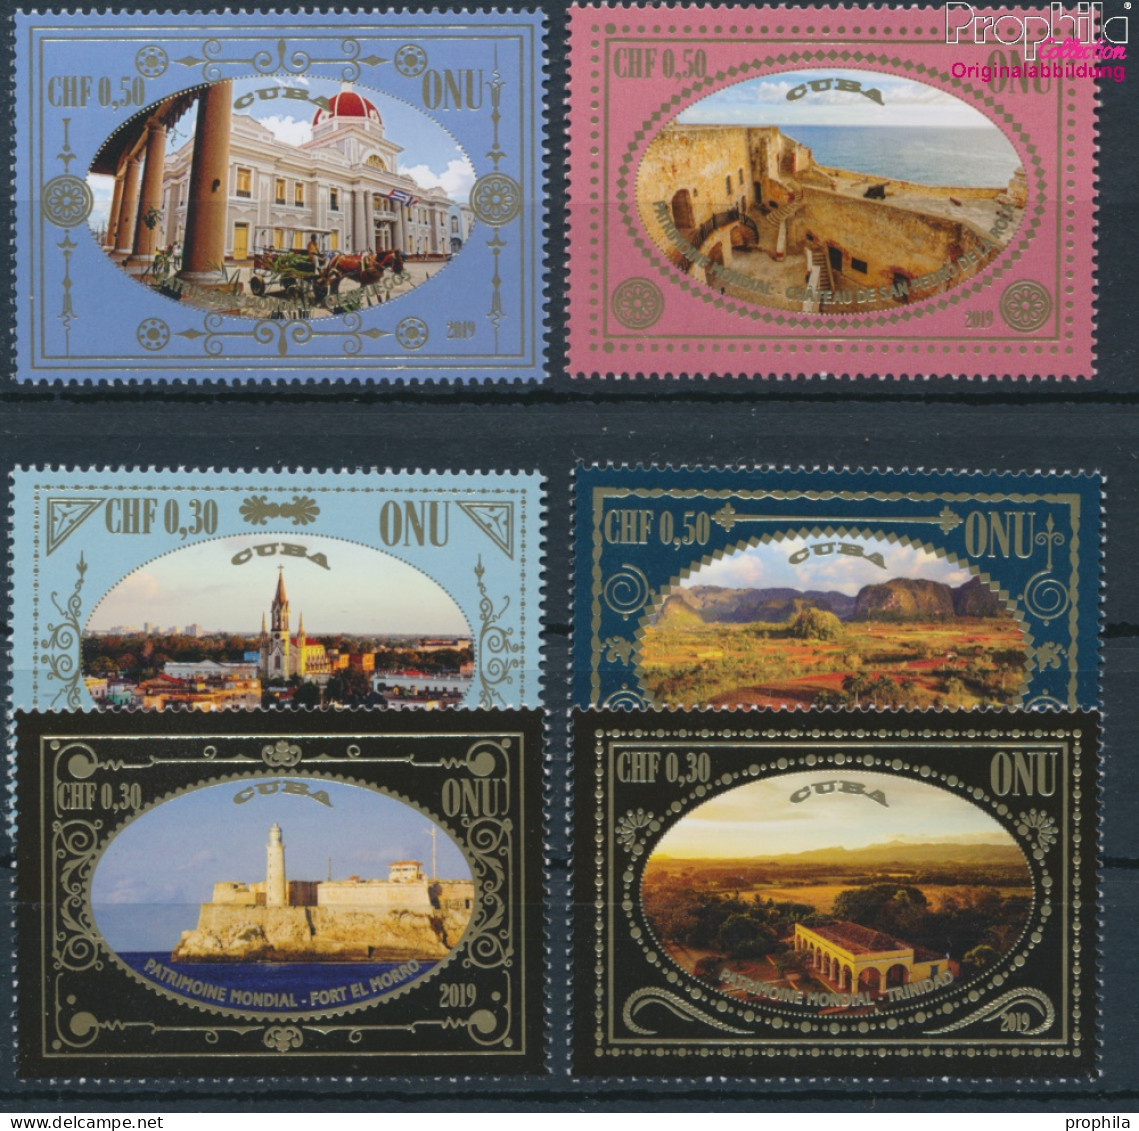 UNO - Genf 1100-1105 (kompl.Ausg.) Postfrisch 2019 UNESCO Welterbe Kuba (10194028 - Unused Stamps